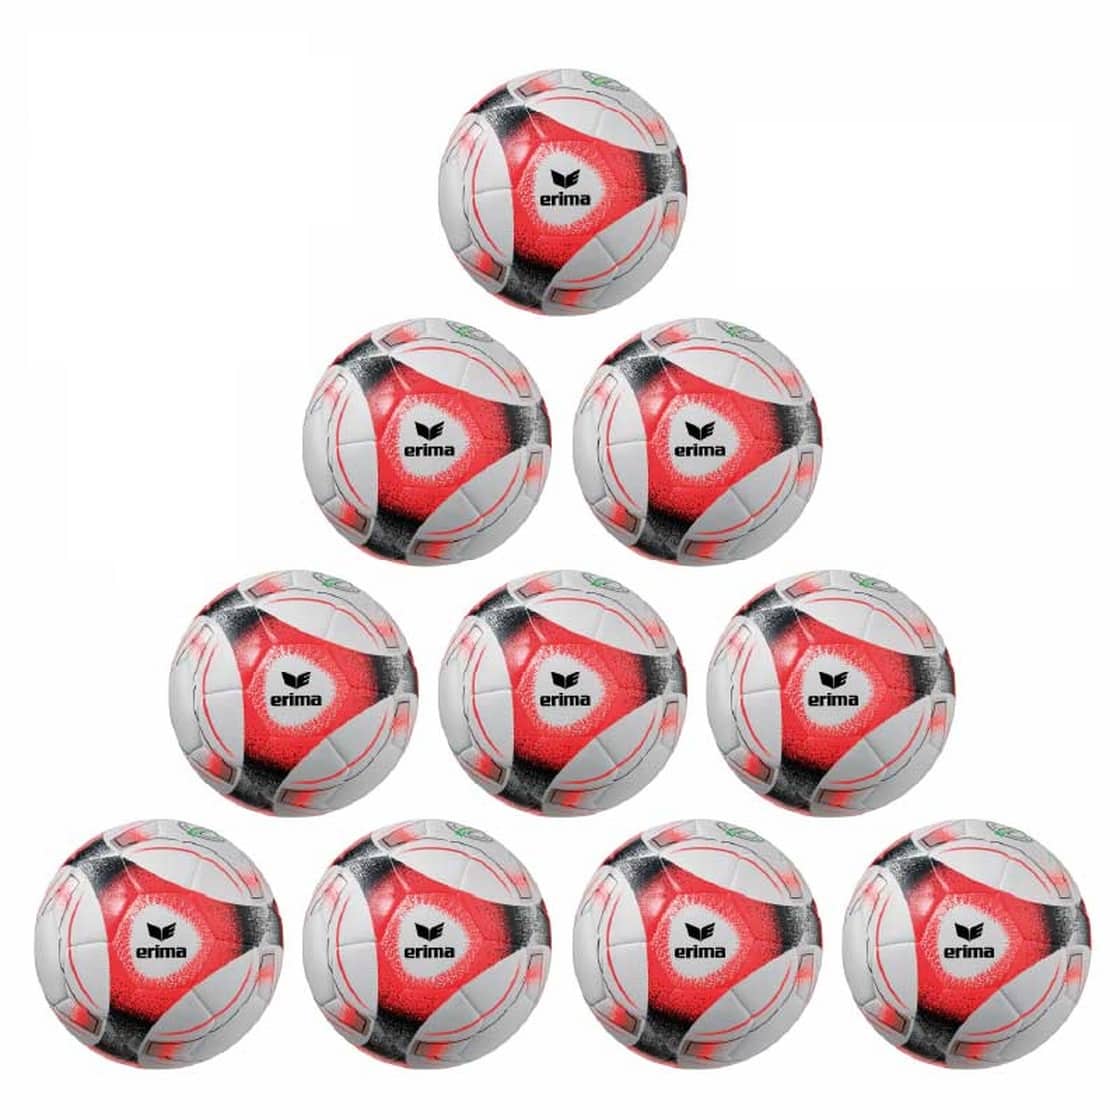 Erima Ballpaket 10x Hybrid Trainingsball Lite 350g rot inkl. Ballsack